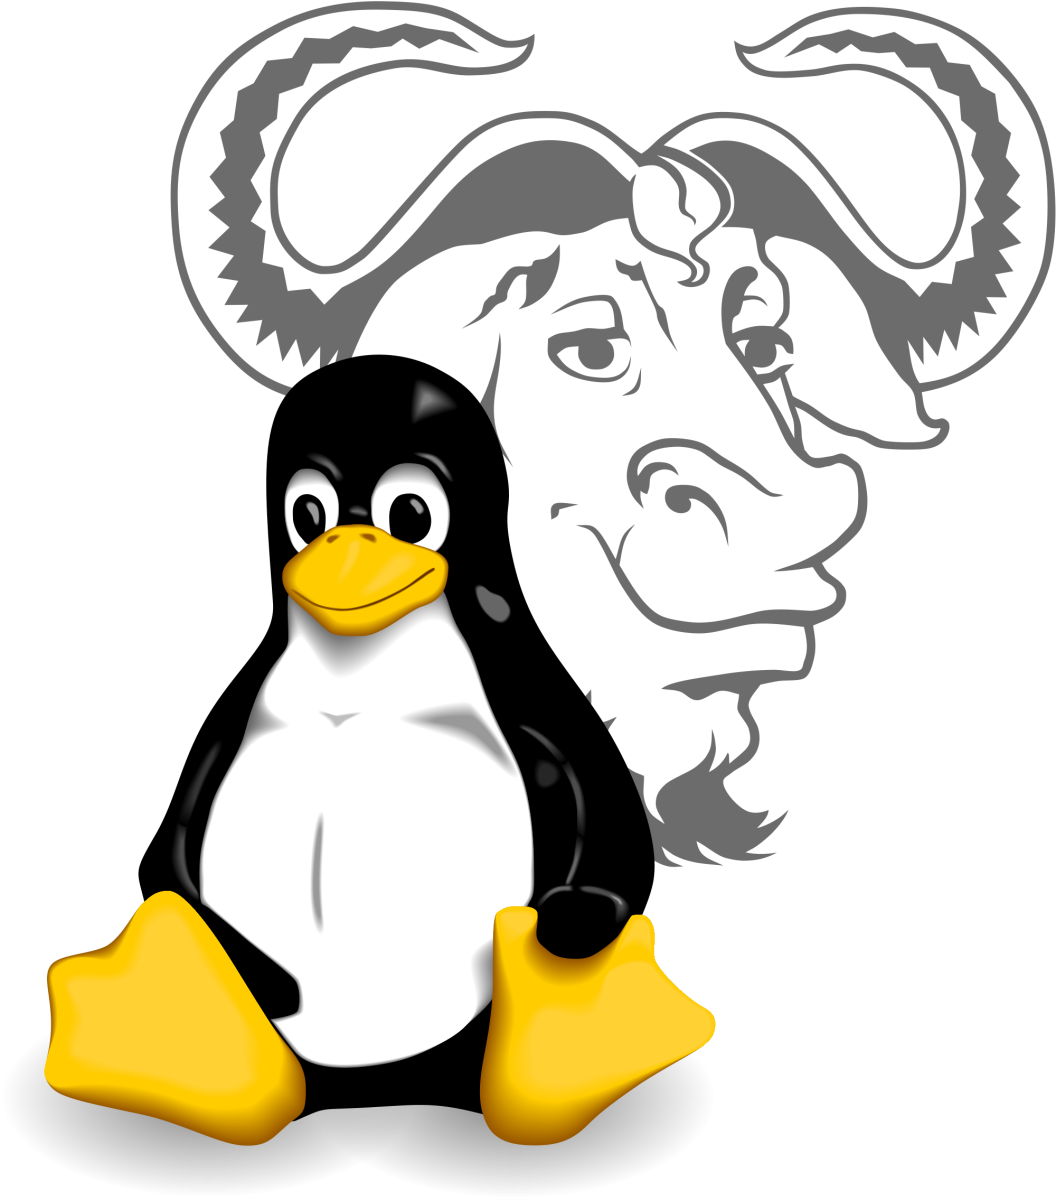 Votre distribution GNU/Linux